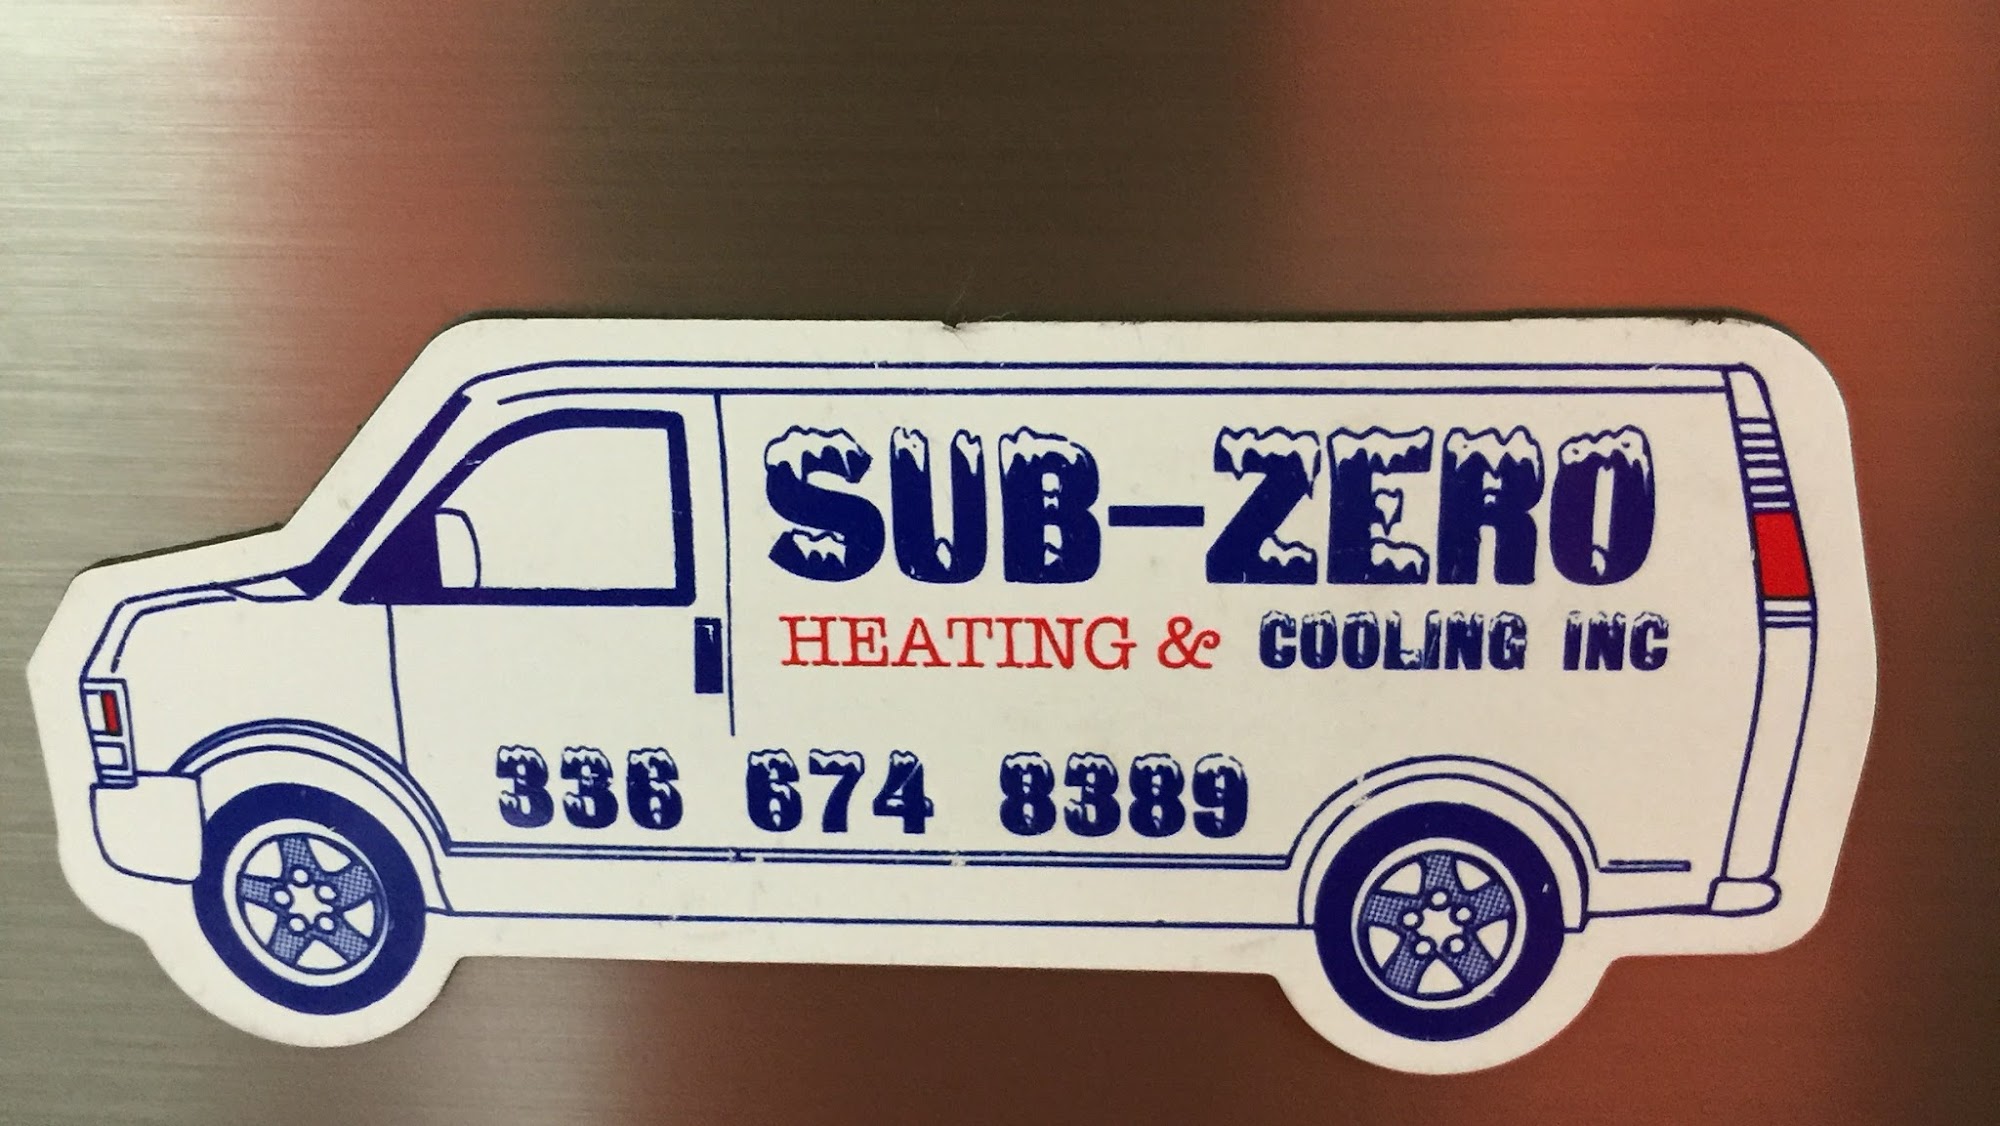 Sub Zero Heating & Cooling Inc